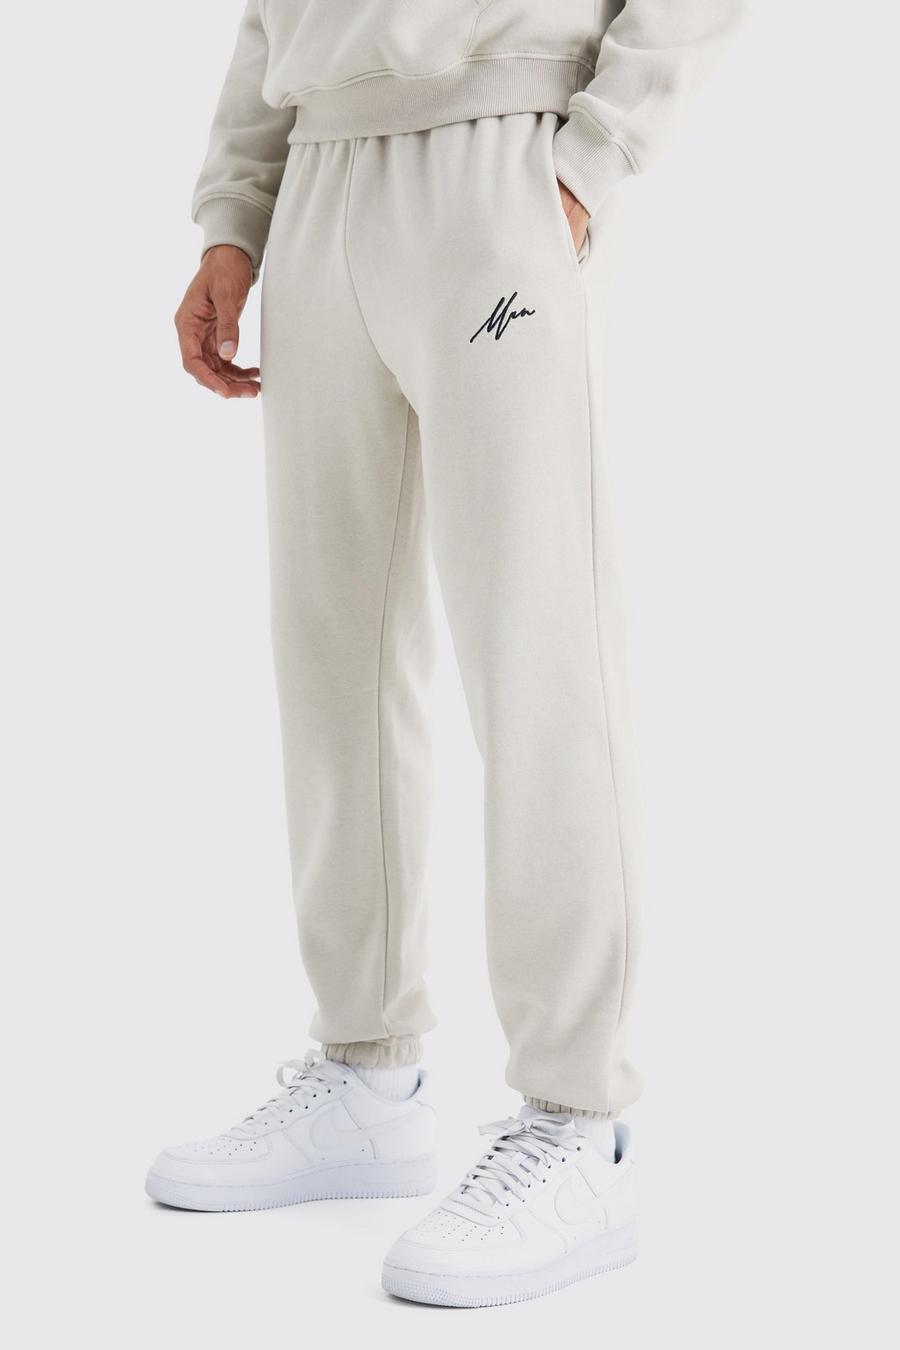 Pantaloni tuta Basic Man Core Fit, Sand image number 1